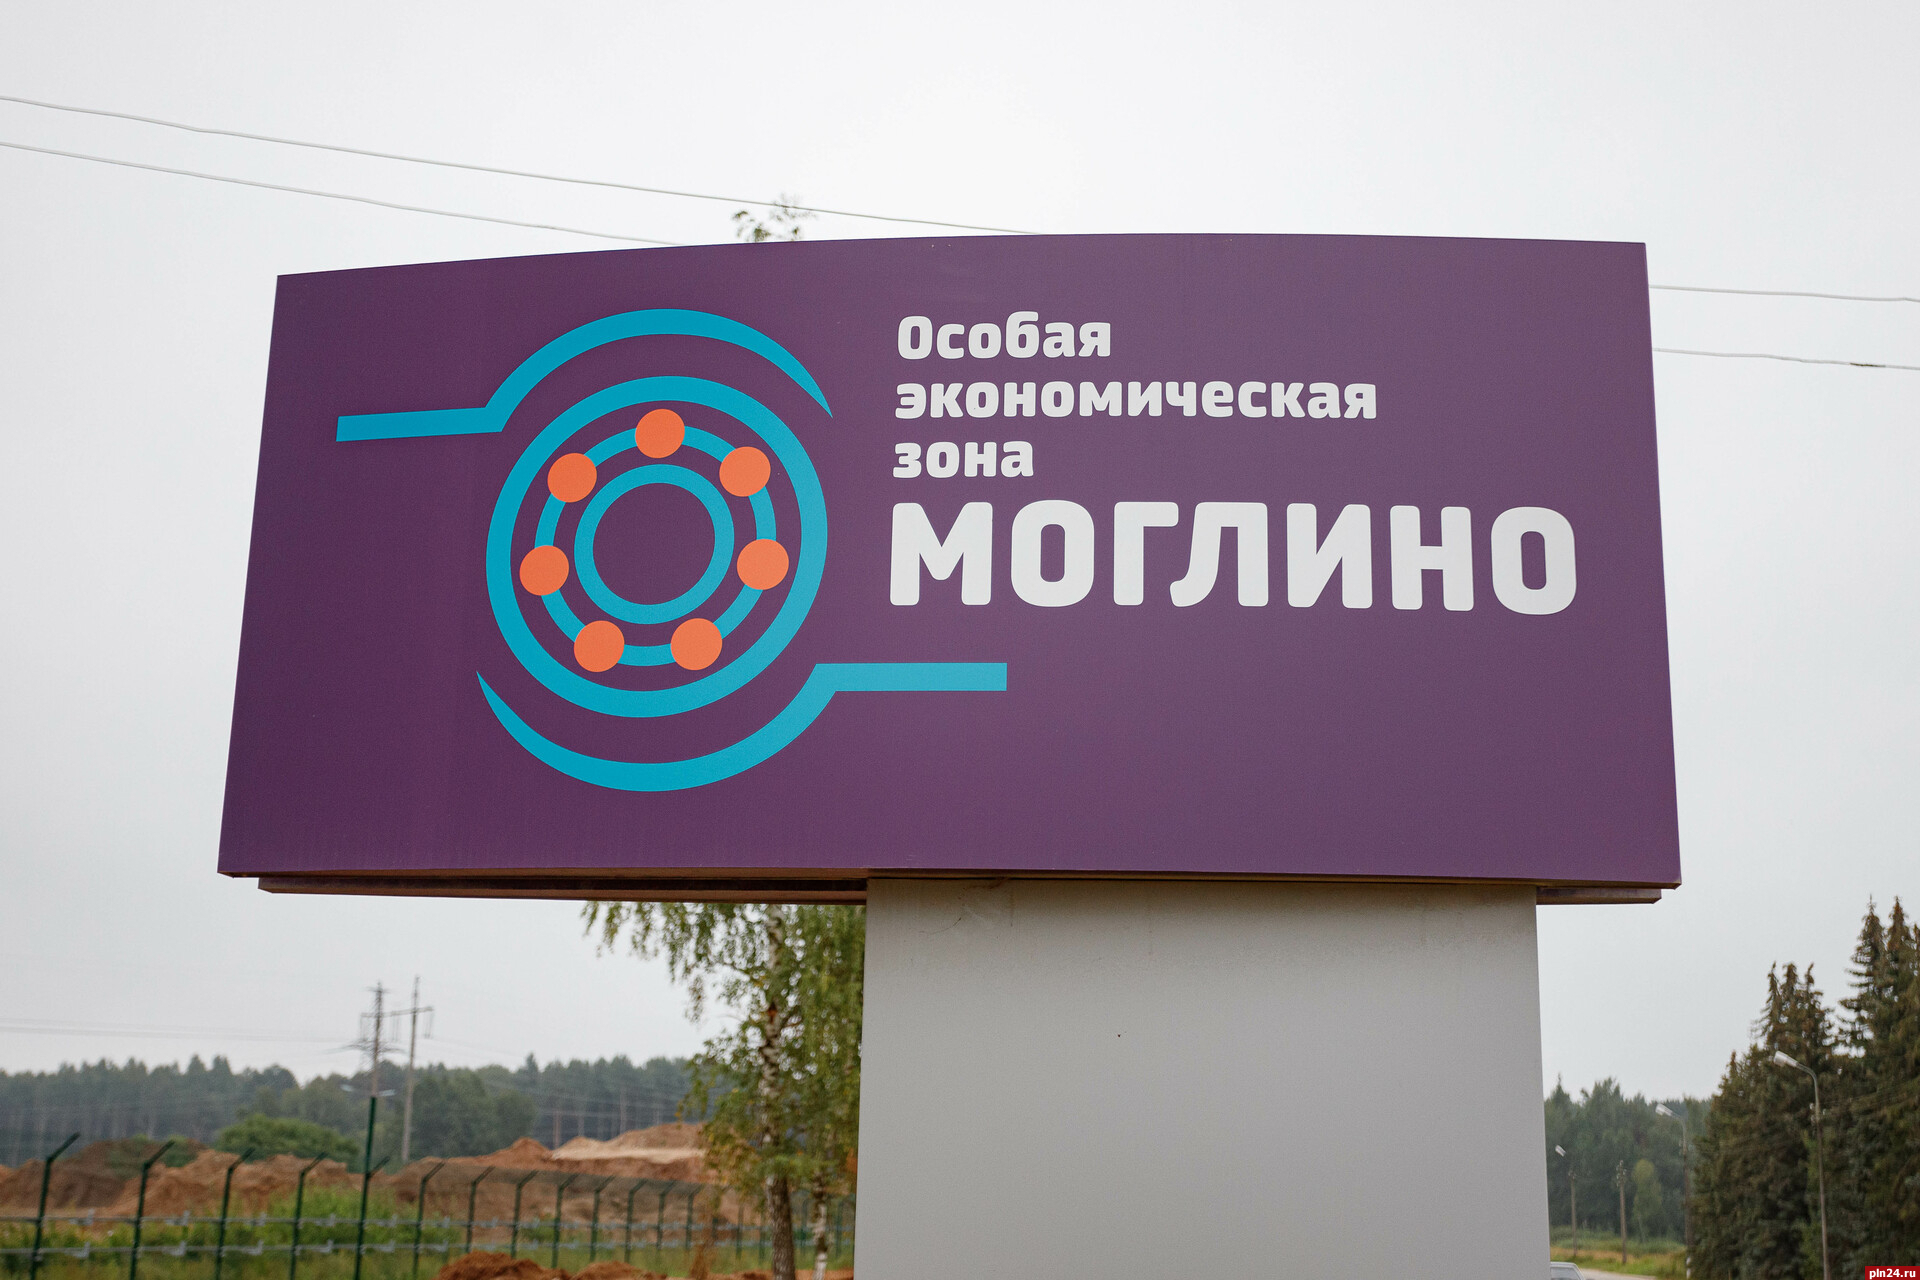 Суд отменил требование вернуть в бюджет свыше 12 млн рублей, направленных на зарплаты в «Моглино»